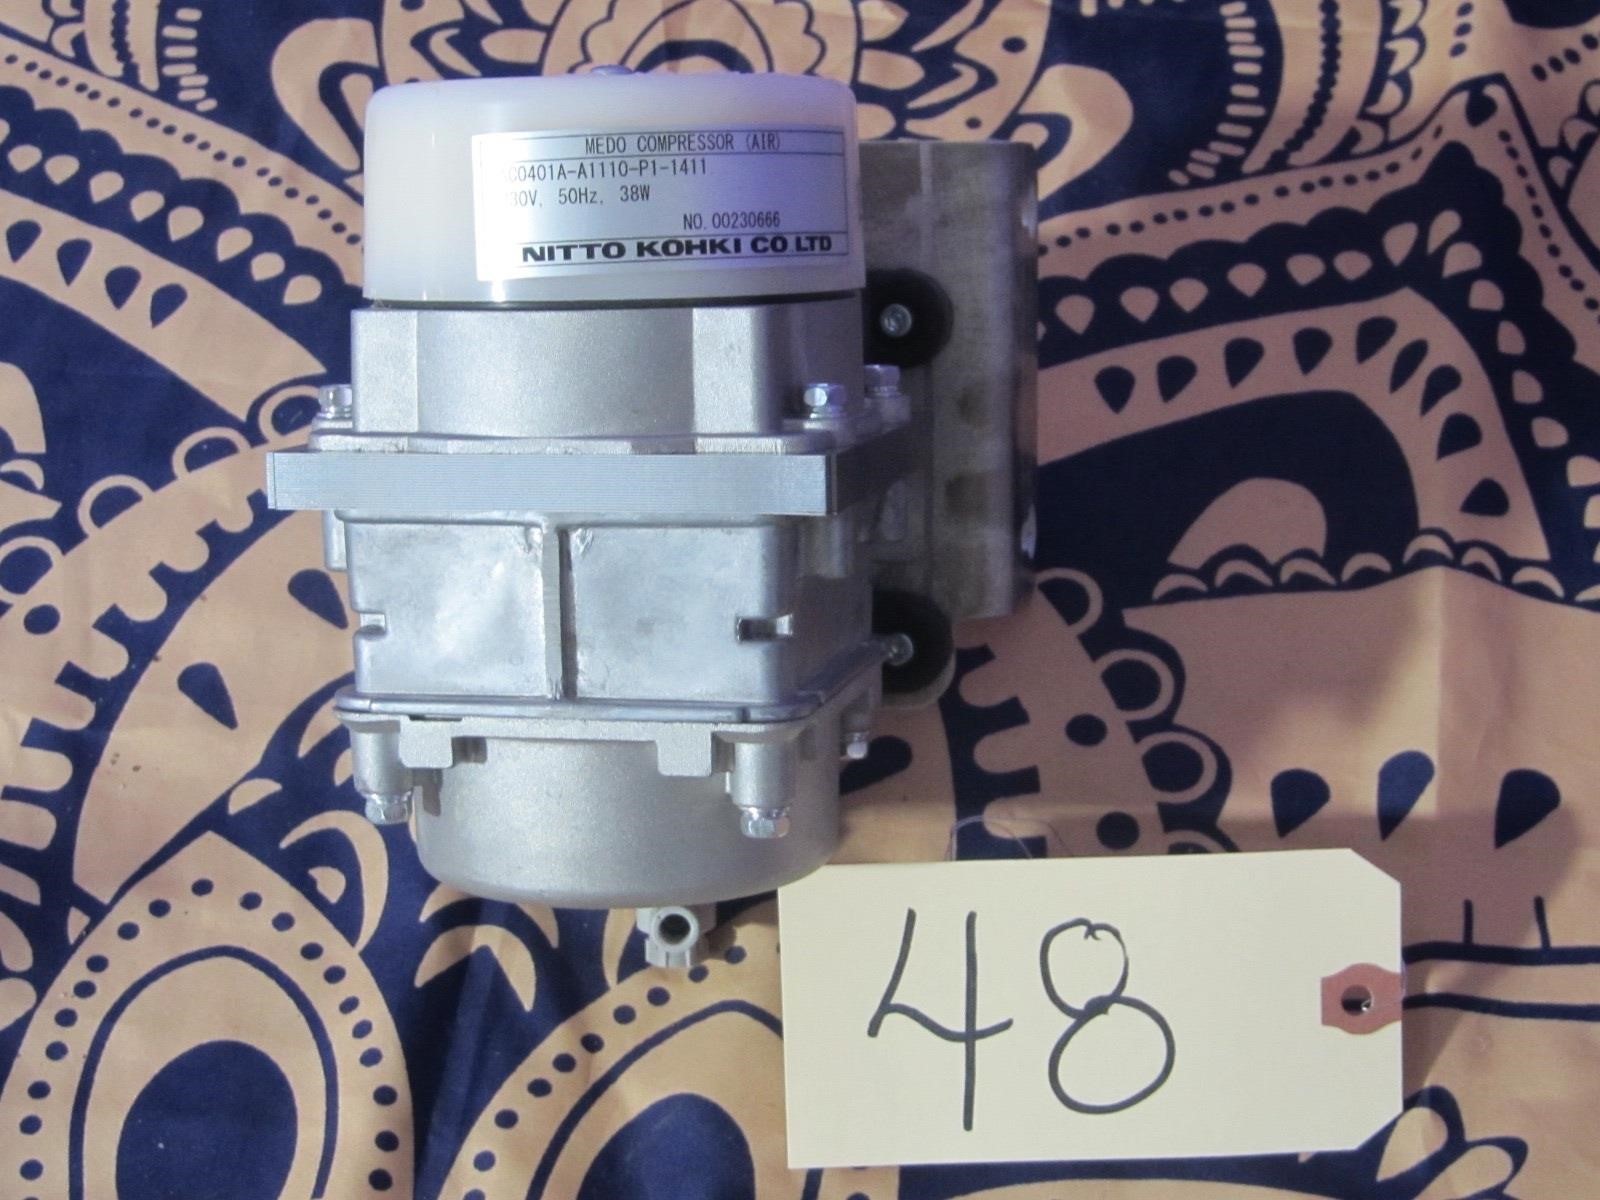 New Nitto Kohki AC0401A-A1110-P1-1411 Compressor